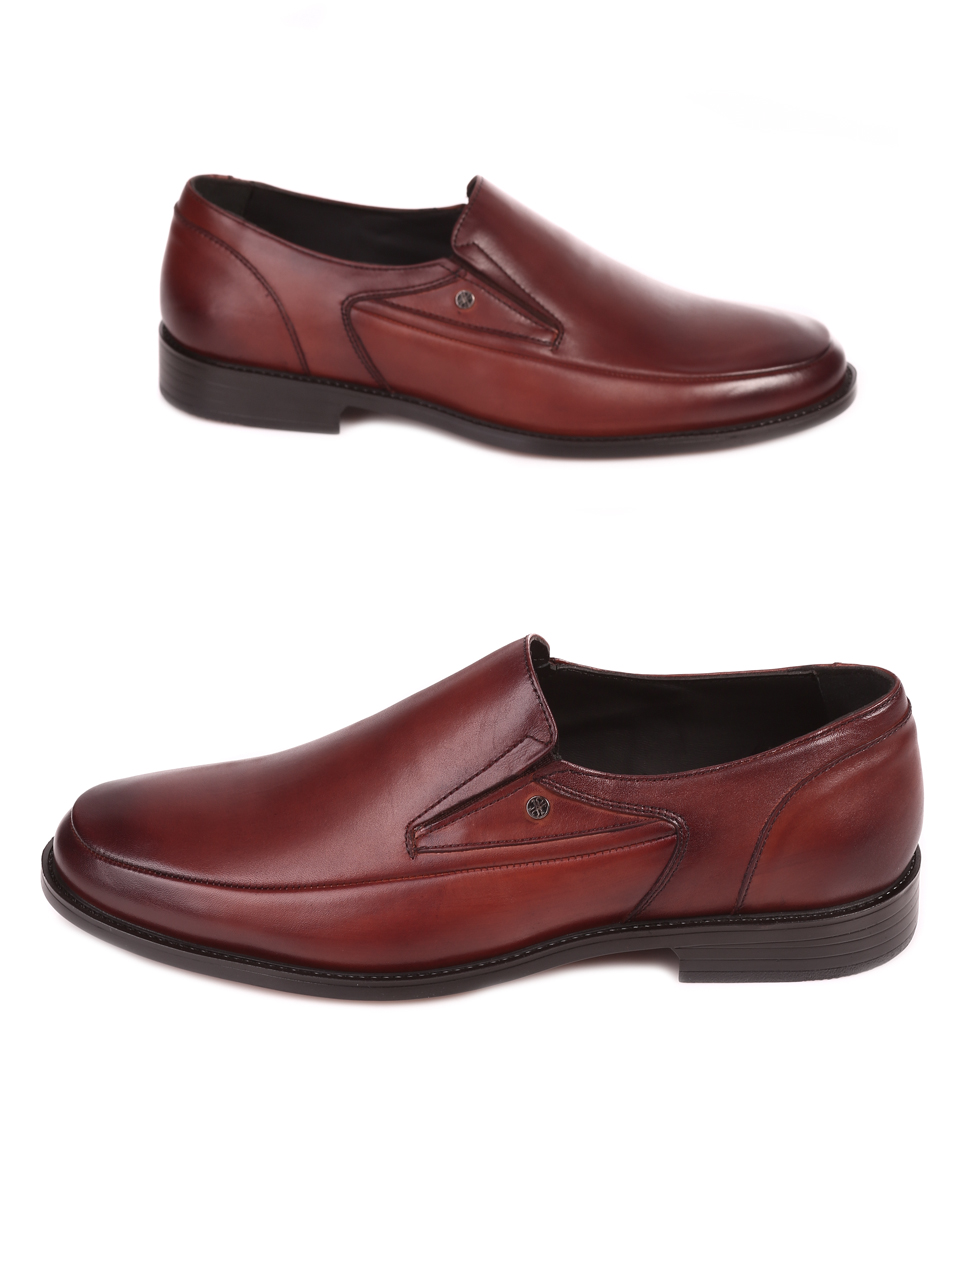 Eлегантни мъжки обувки от естествена кожа 153-5834 dk.brown